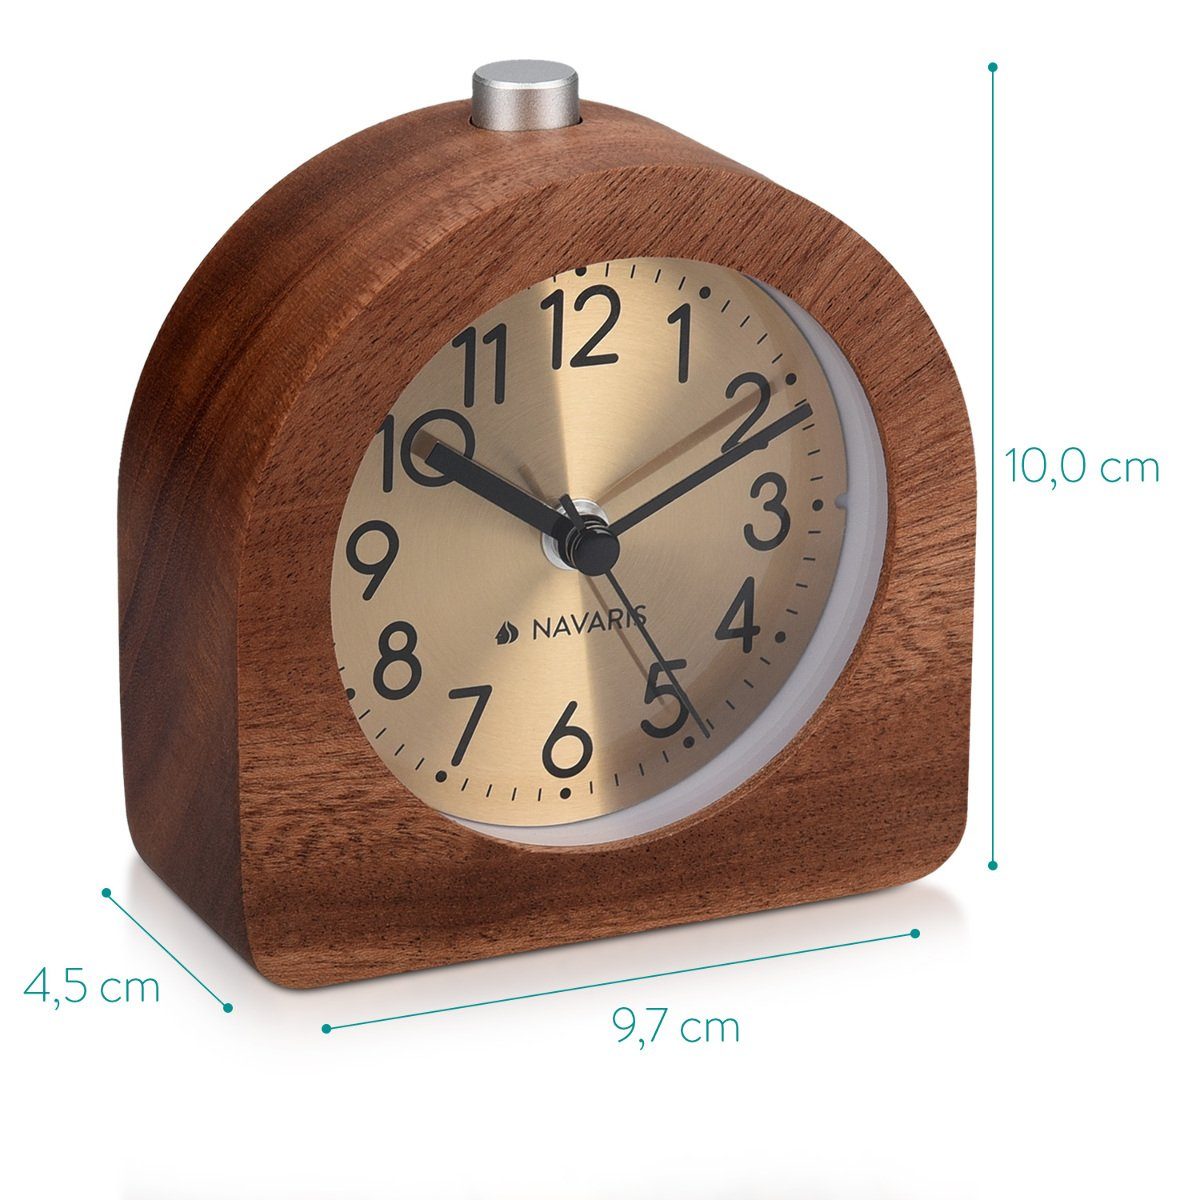 Navaris Reisewecker Analog Holz Wecker Retro Halbrund/Quadrat Dunkelbraun mit Uhr Snooze